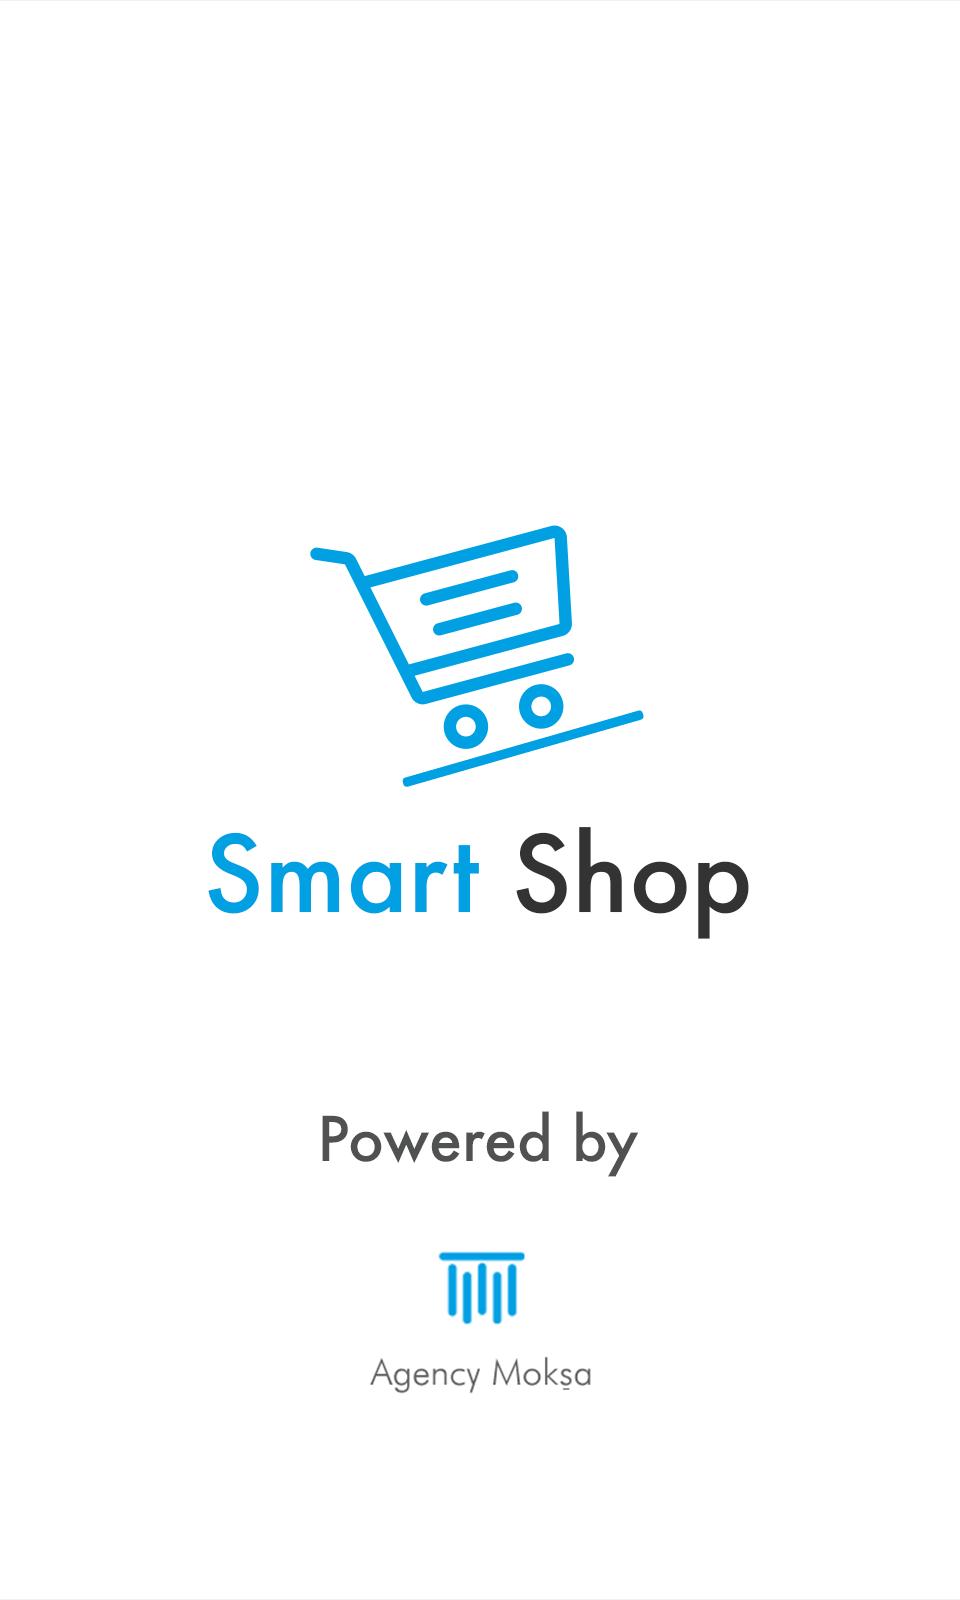 Smart shopping. Smart shop mobile. Smart shop. Smart shop mobile logo. Smart shop ru